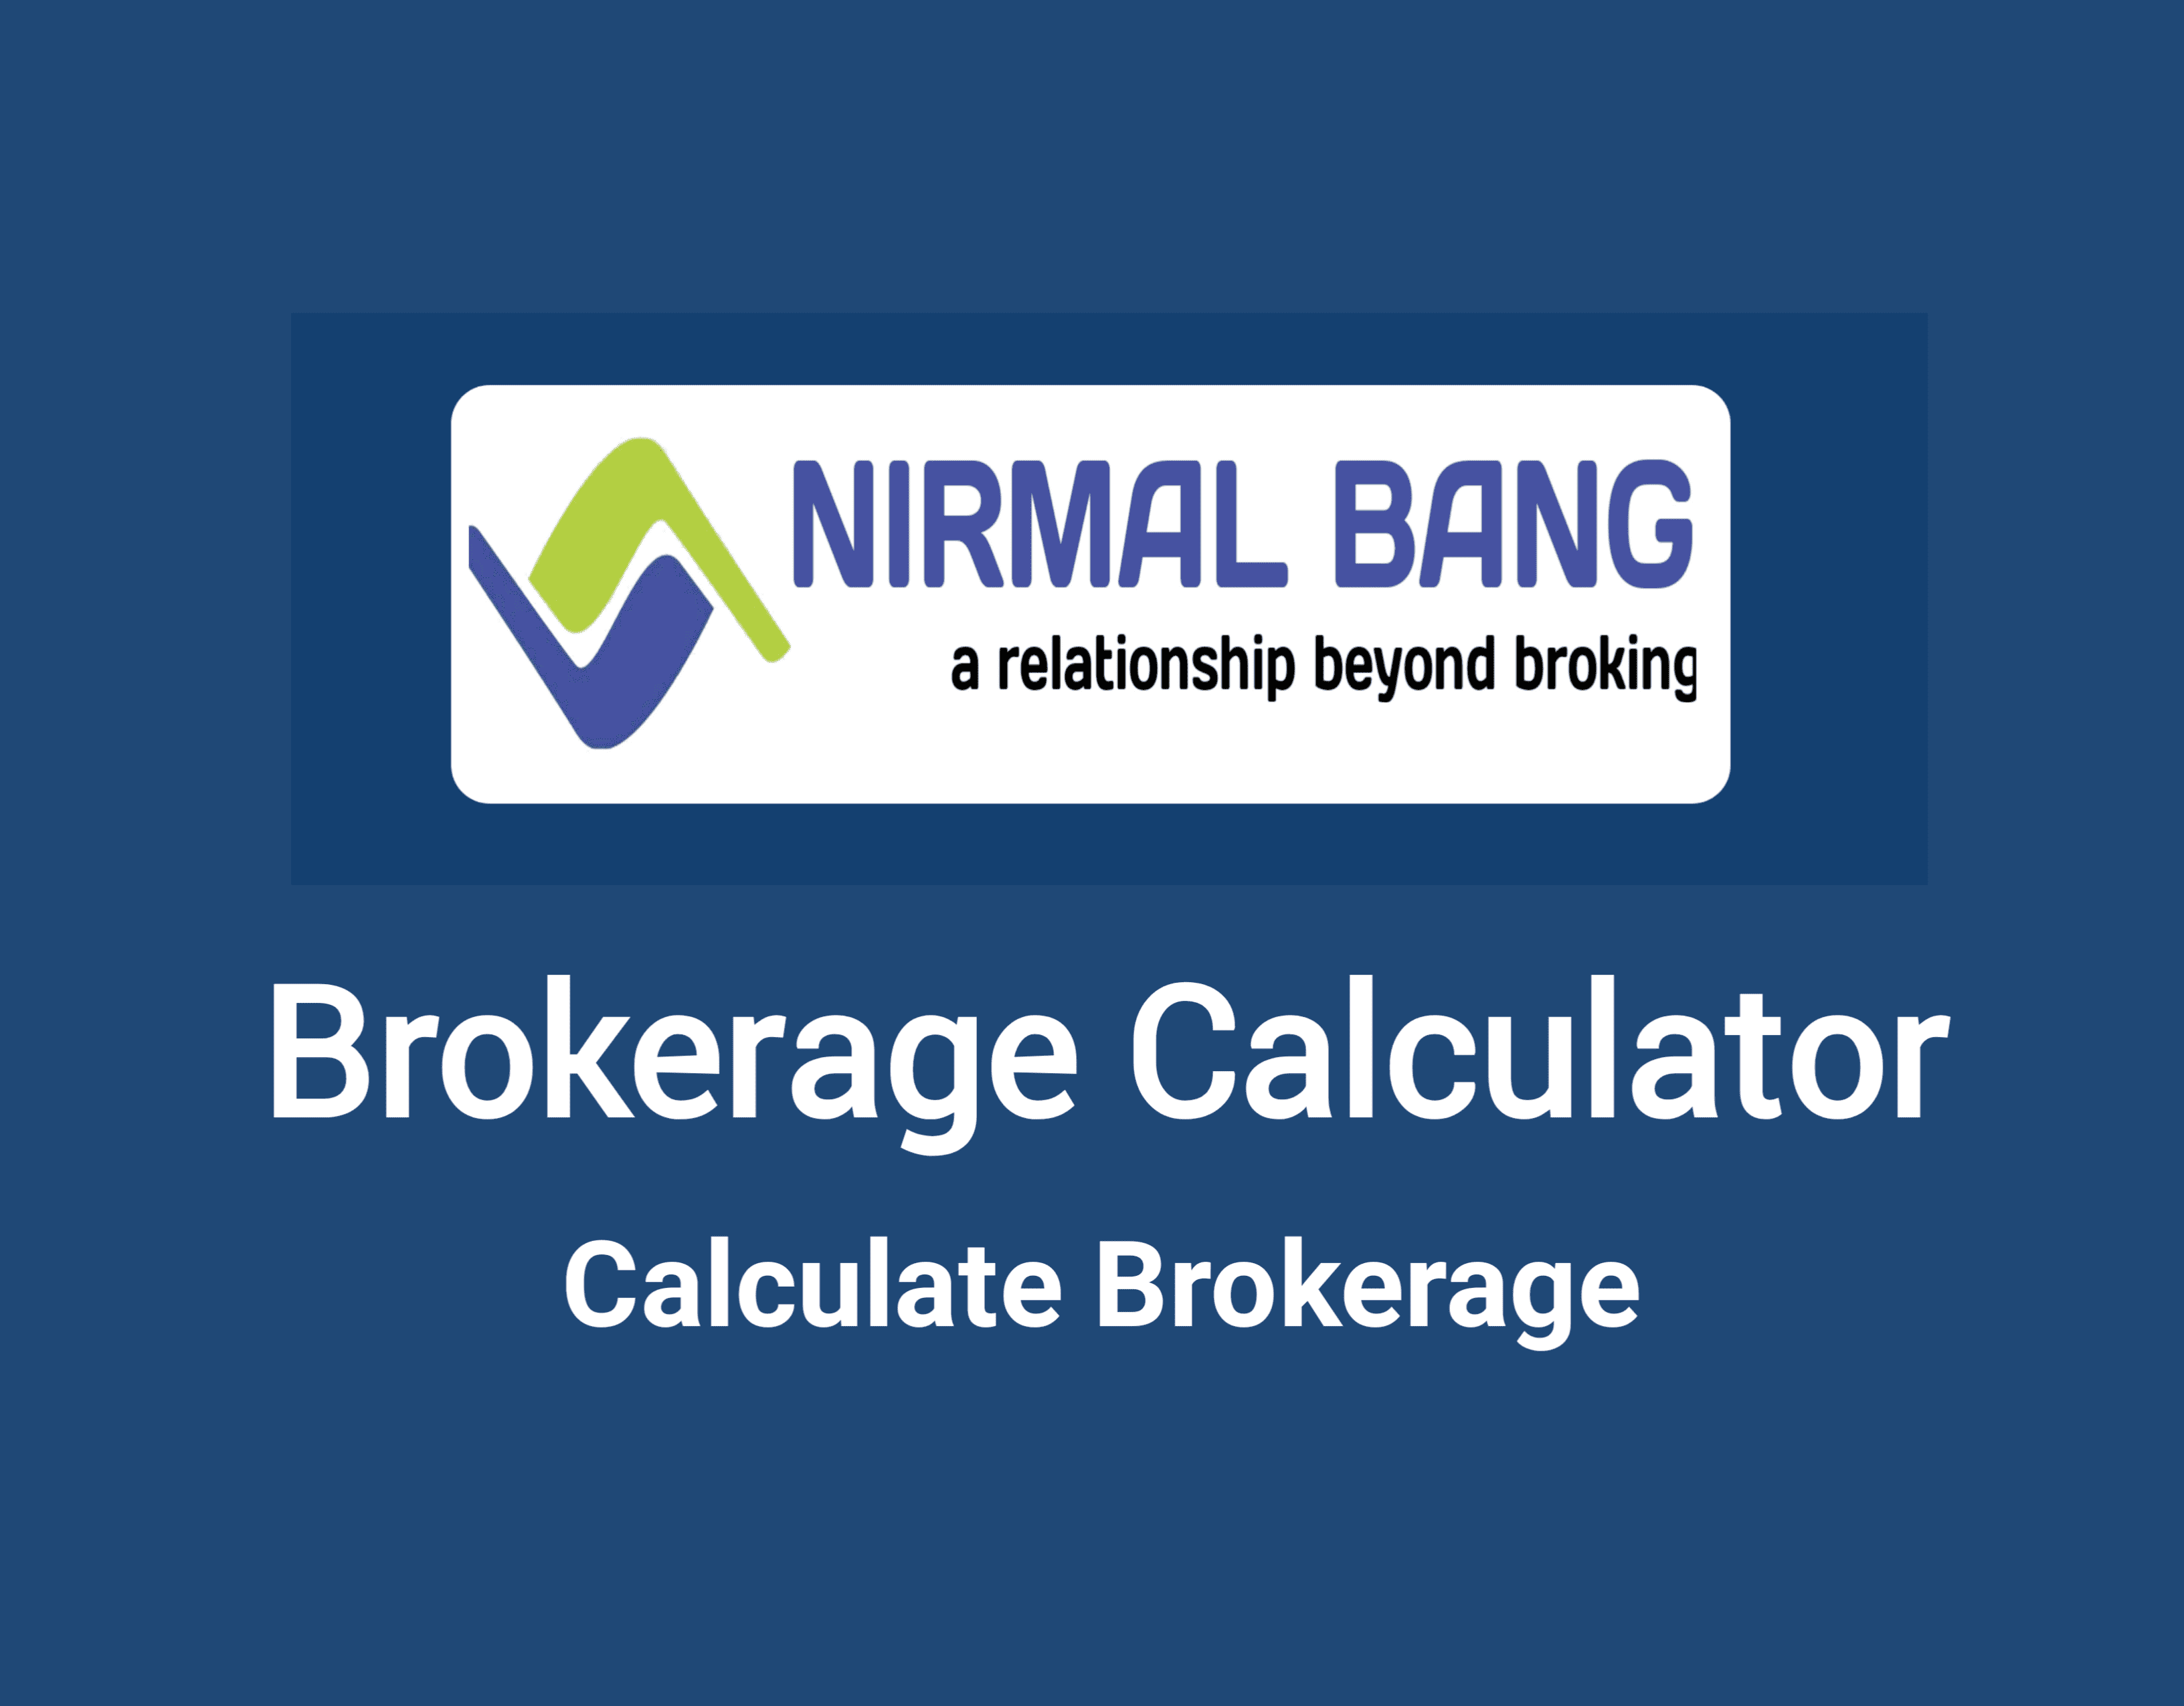 Nirmal Bang Brokerage Calculator